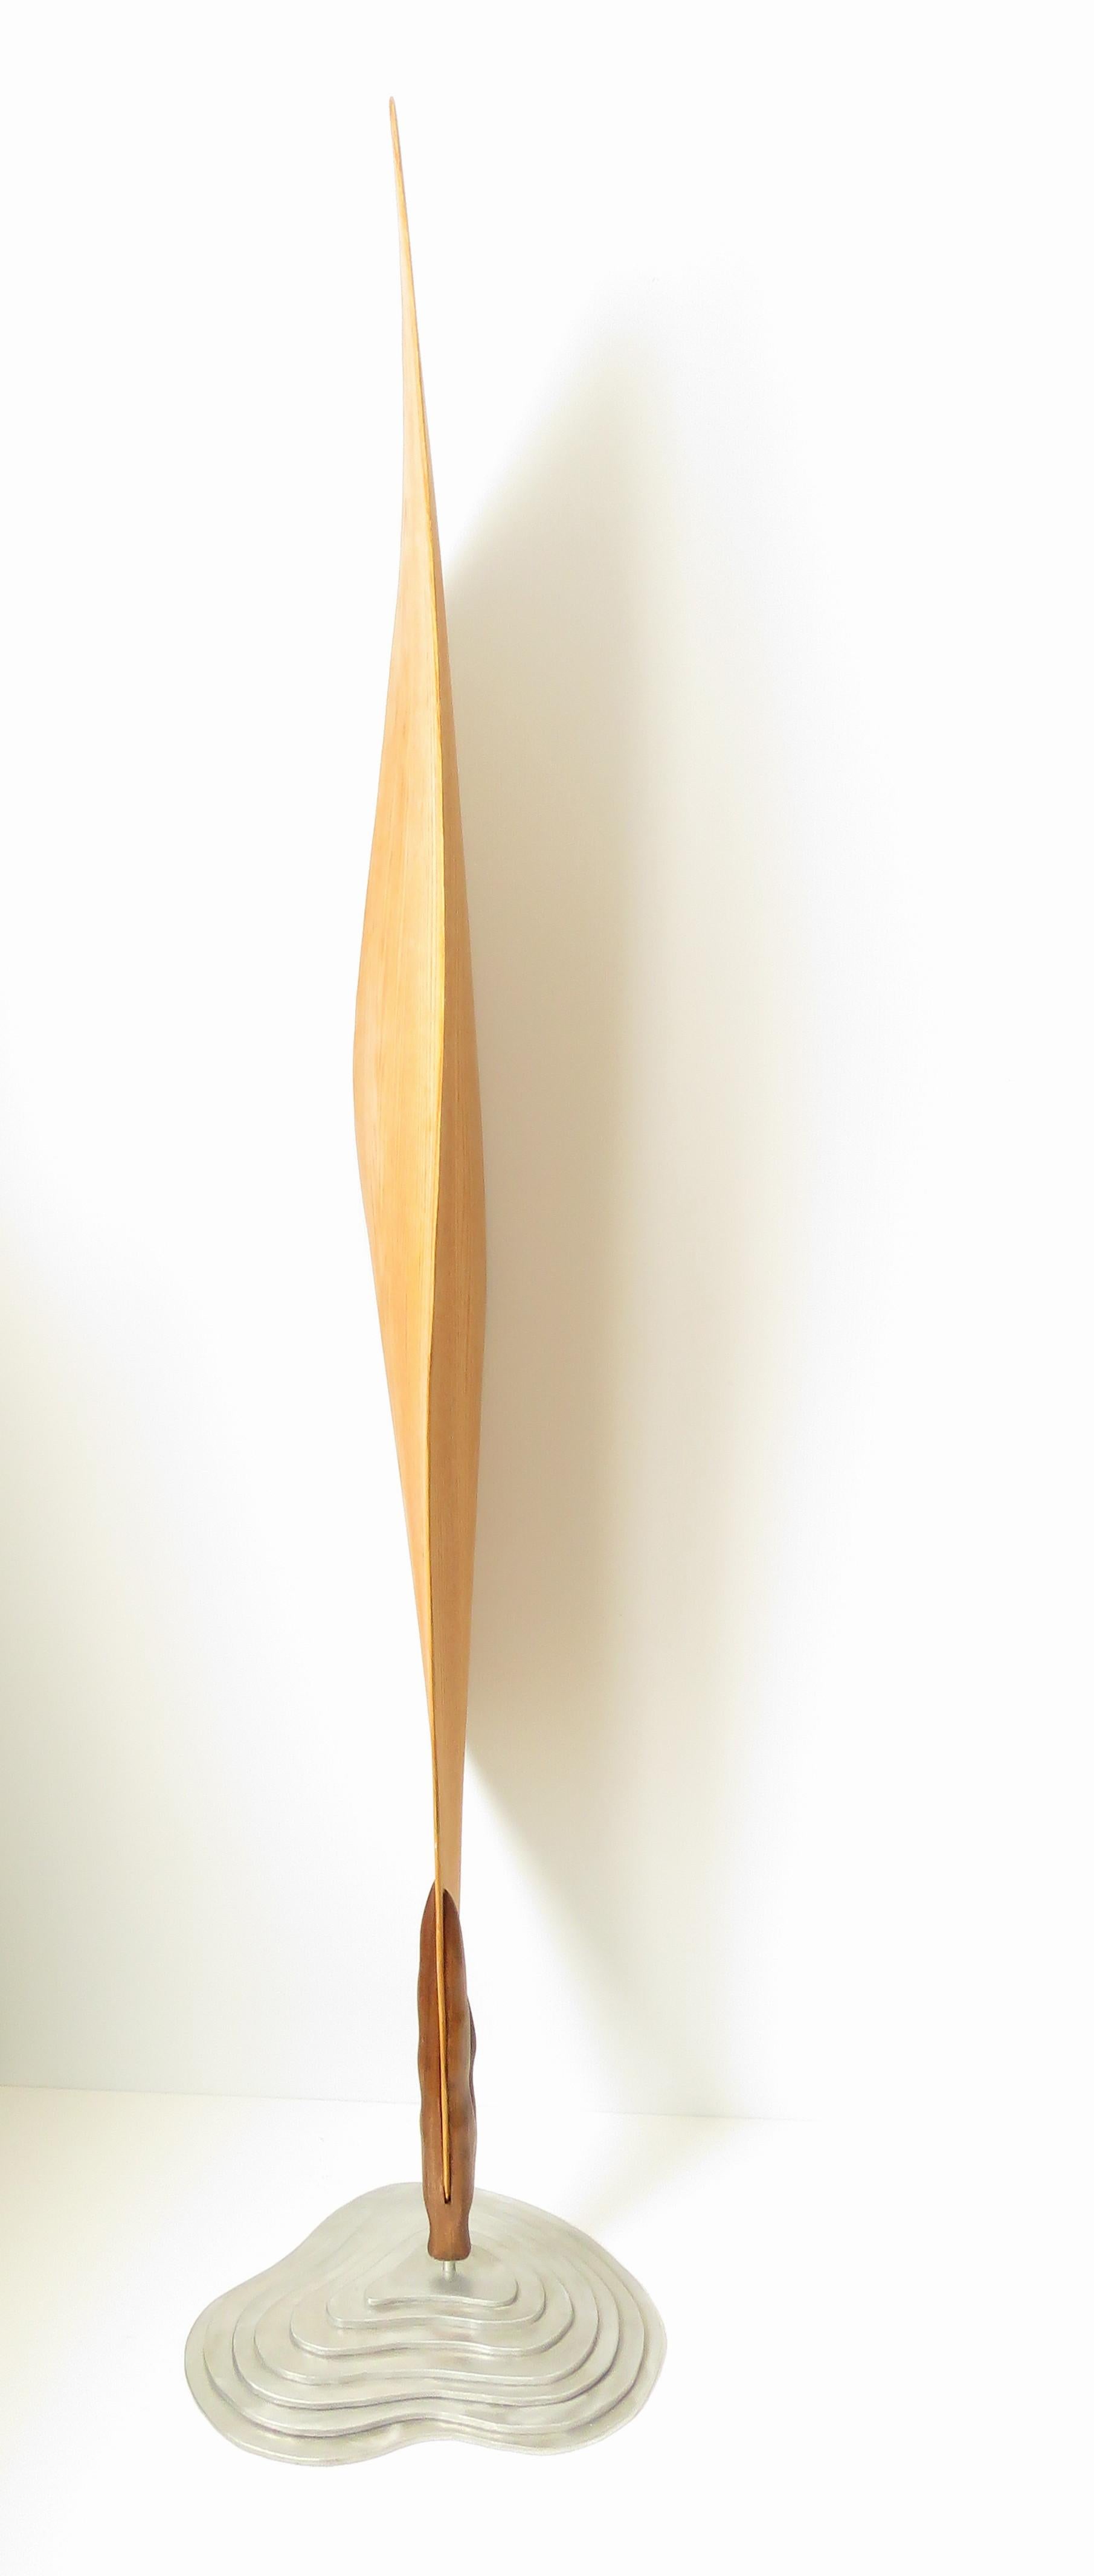 Cocoon (Holz rote Eiche Vogel abstrakte Kunst zen Skulptur Sockel minimal Erbse Schote) (Minimalistisch), Sculpture, von Eric Tardif